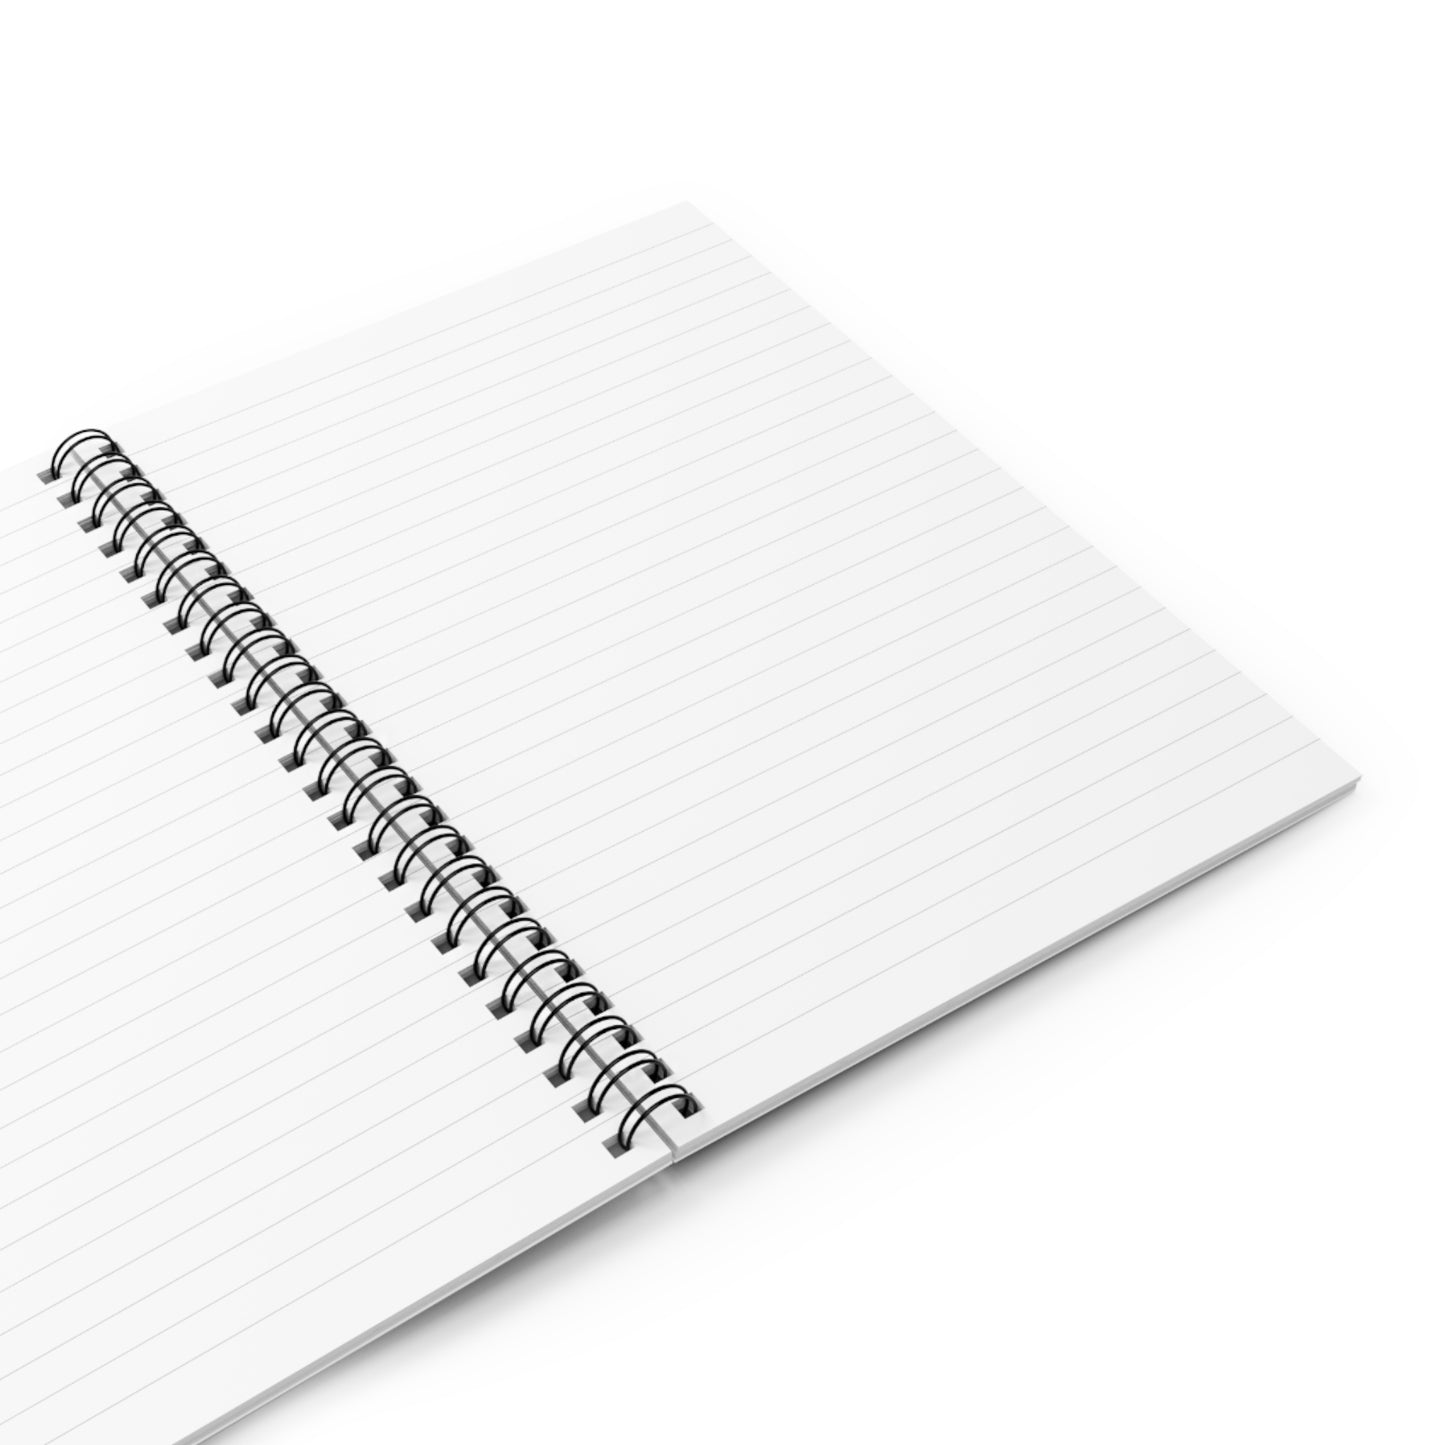 SerenitySurge Notebook Journal